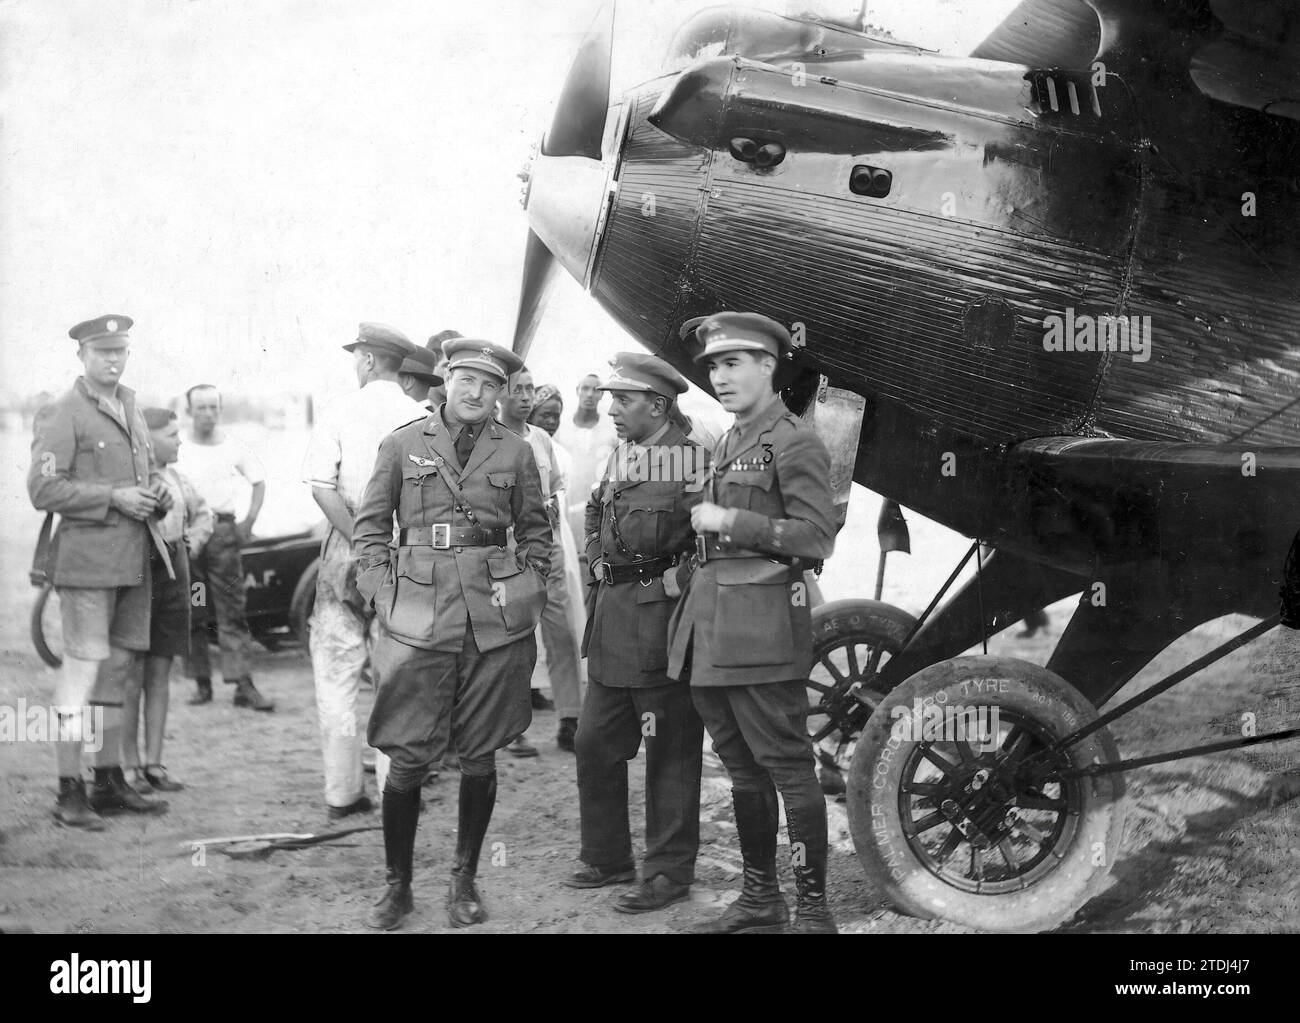 04/08/1926. González Gallarza e Loriga, poco prima di iniziare la spedizione. Crediti: Album / Archivo ABC Foto Stock